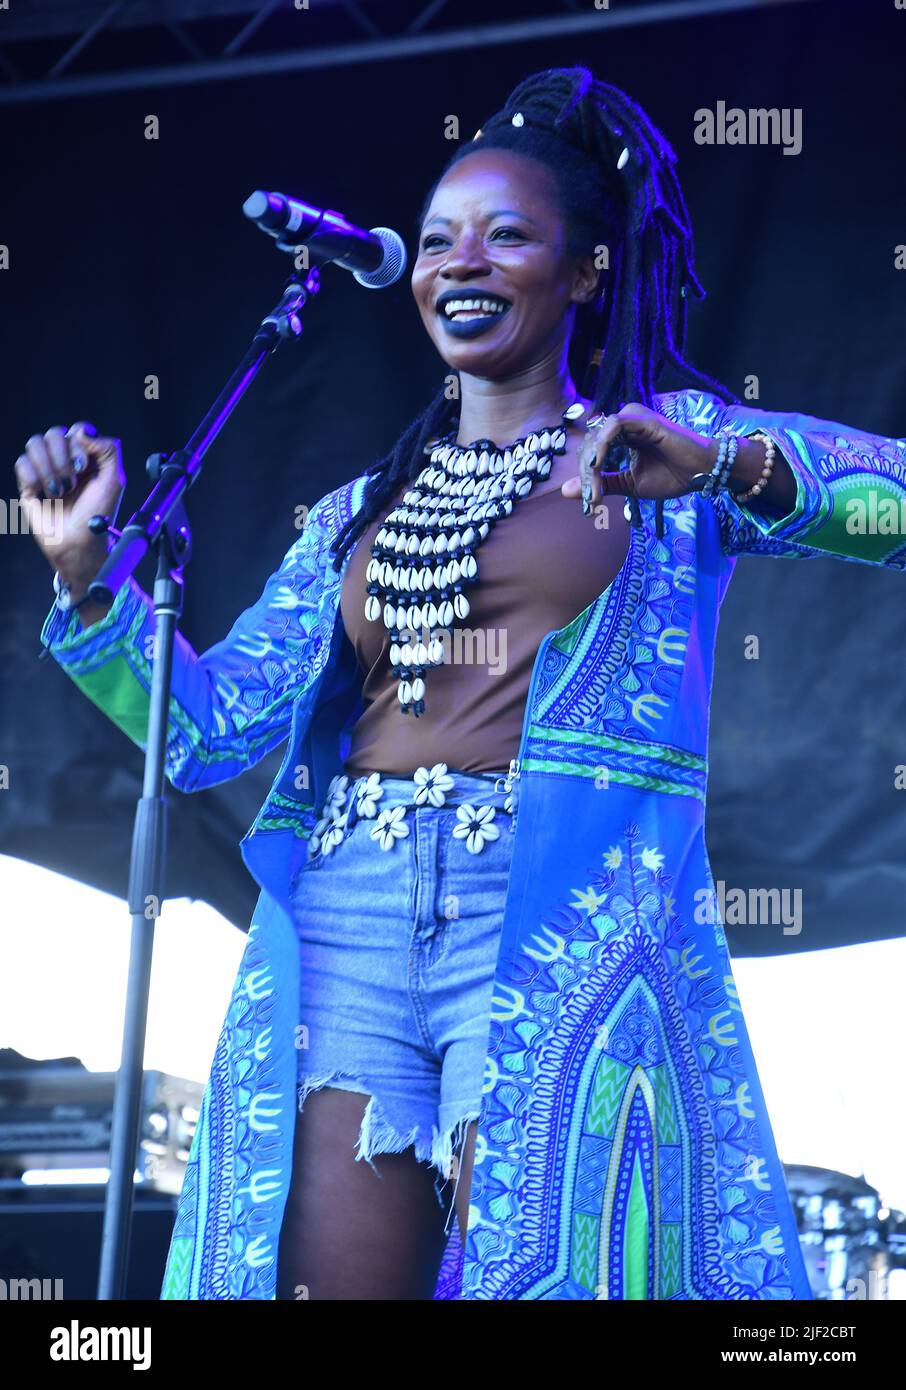 Die Sängerin, Songwriterin und Musikerin Natu Camara wird während eines „Live“-Konzerts beim Green River Festival auf der Bühne gezeigt. Stockfoto